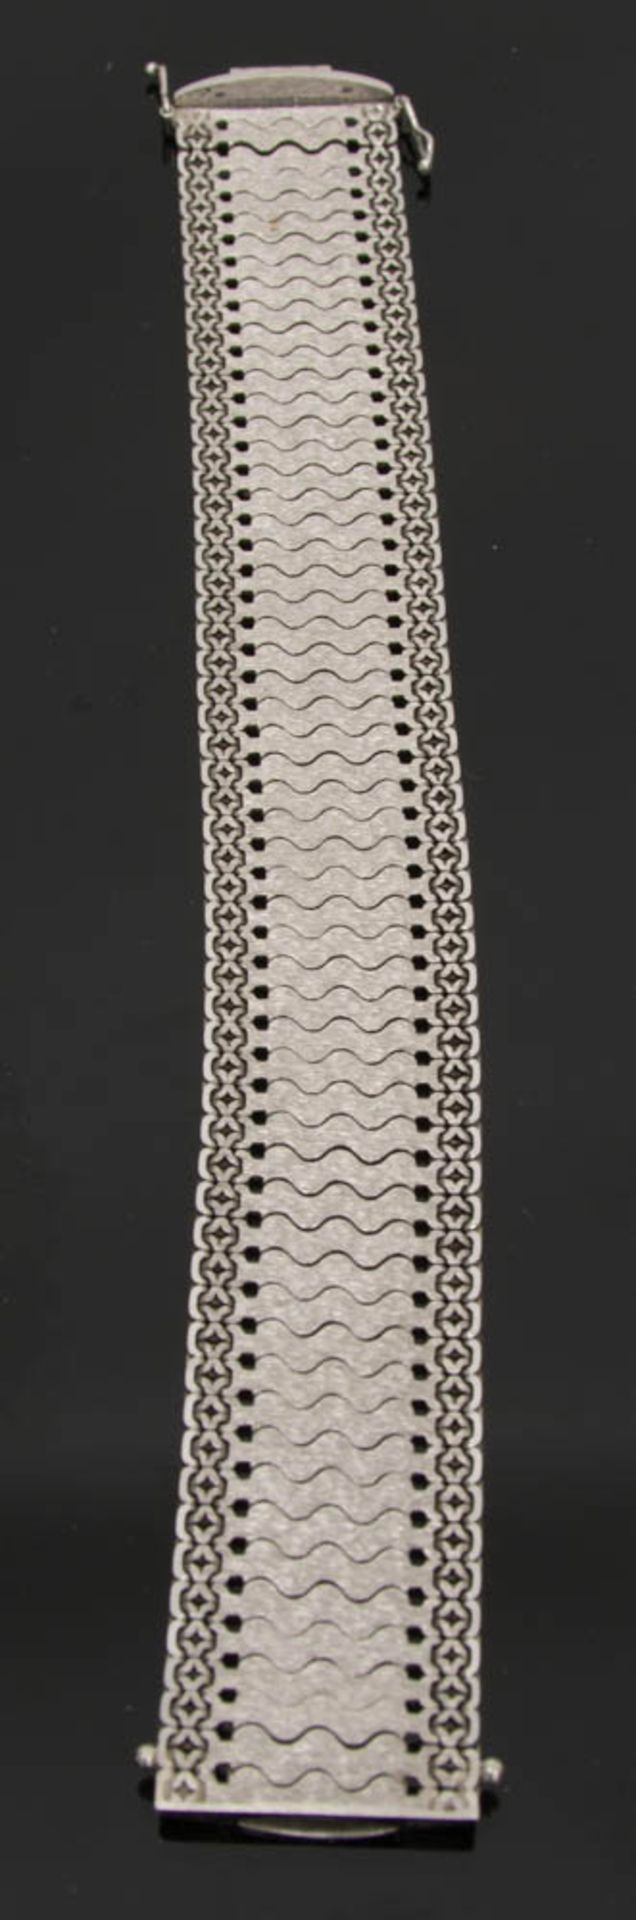 Damenarmband, 585er Weissgold.37,5 g. - Bild 2 aus 3